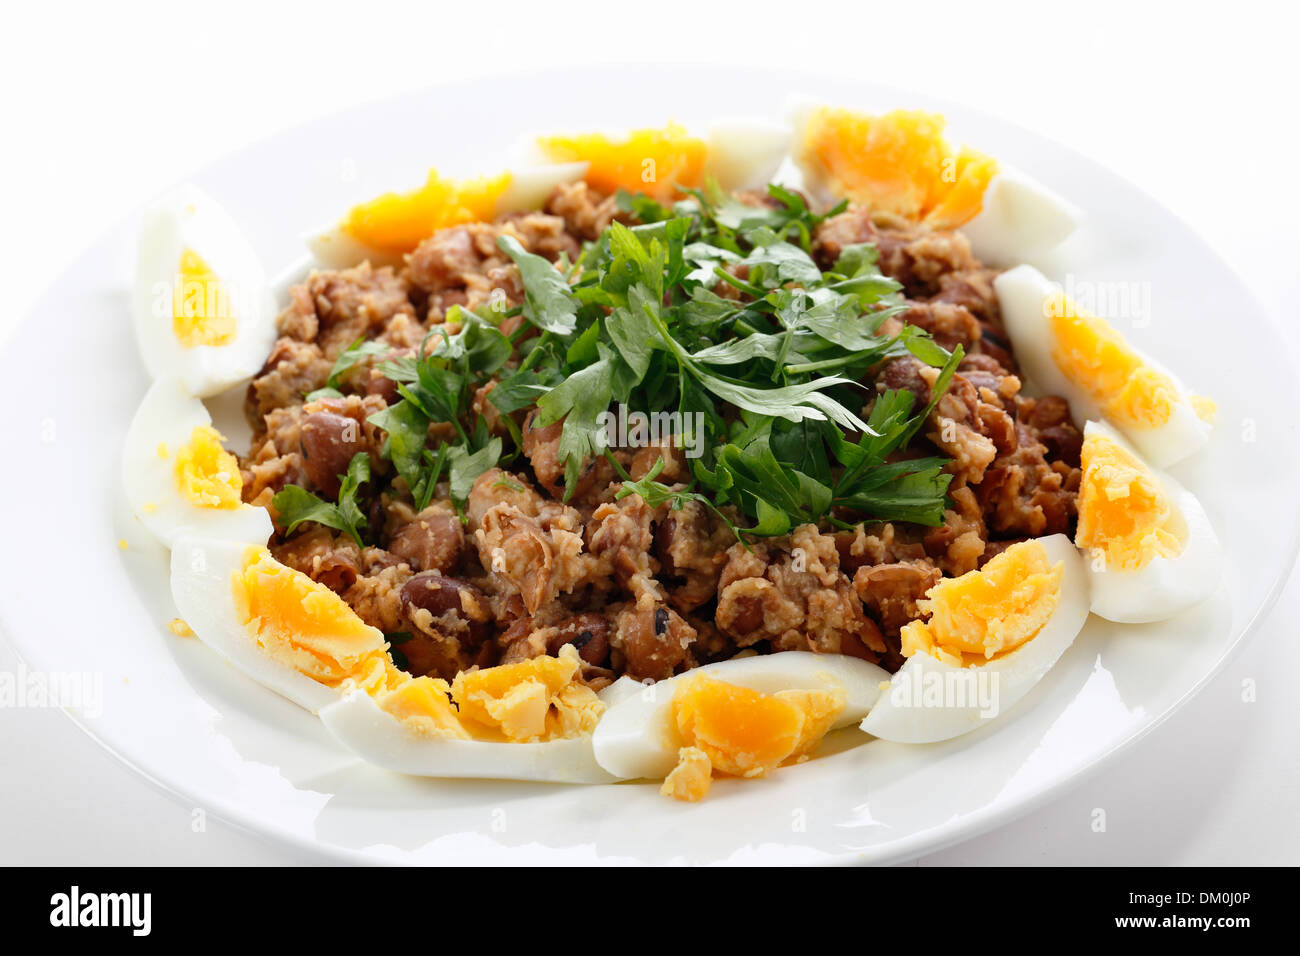 Fallo egiziano - o ful medames - su una piastra garneshed con fette di uova sode e il prezzemolo. Foto Stock